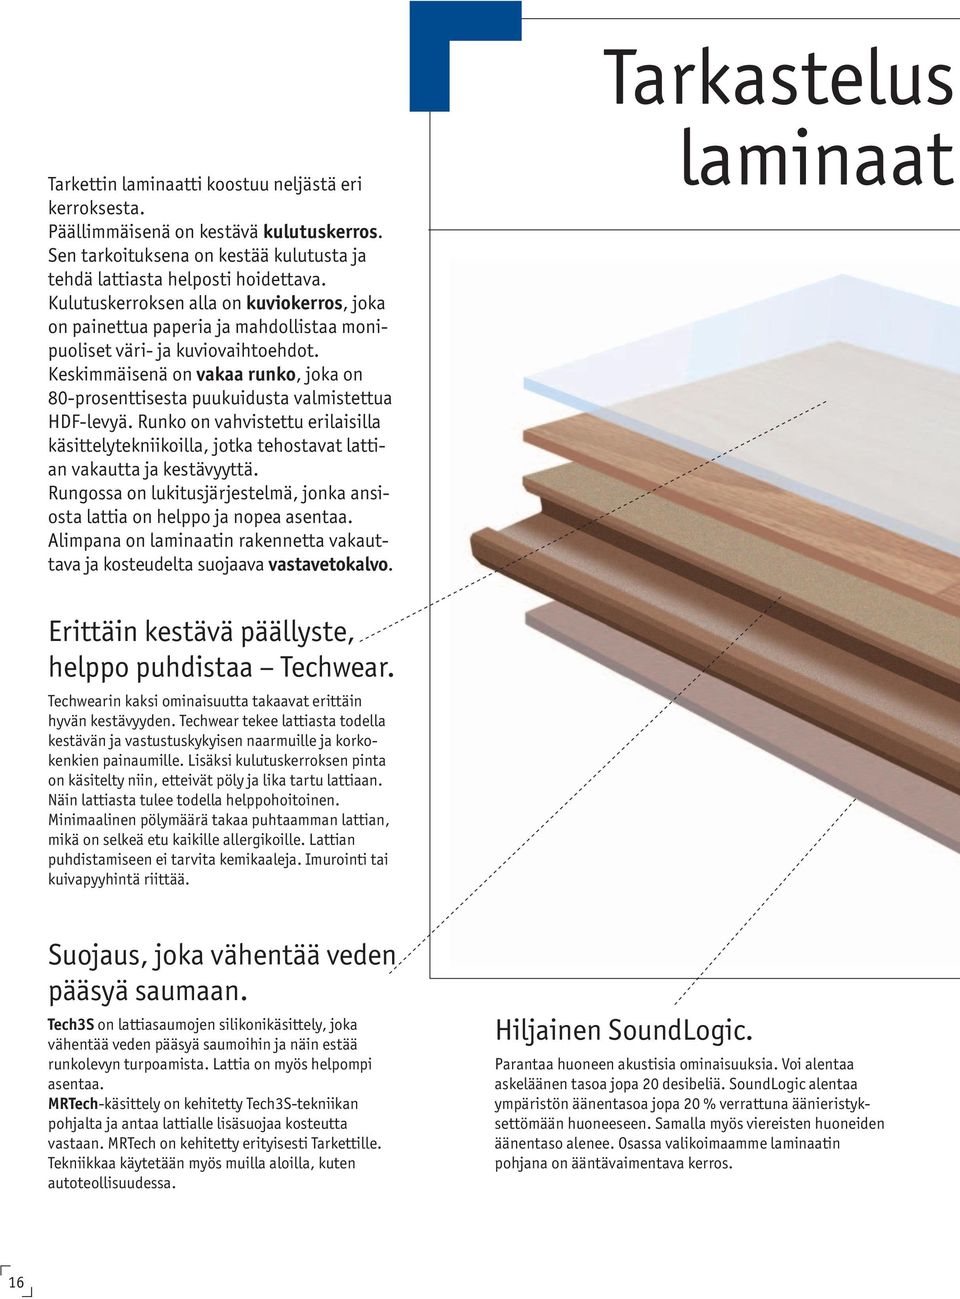 Keskimmäisenä on vakaa runko, joka on 80-prosenttisesta puukuidusta valmistettua HDF-levyä. Runko on vahvistettu erilaisilla käsittelytekniikoilla, jotka tehostavat lattian vakautta ja kestävyyttä.